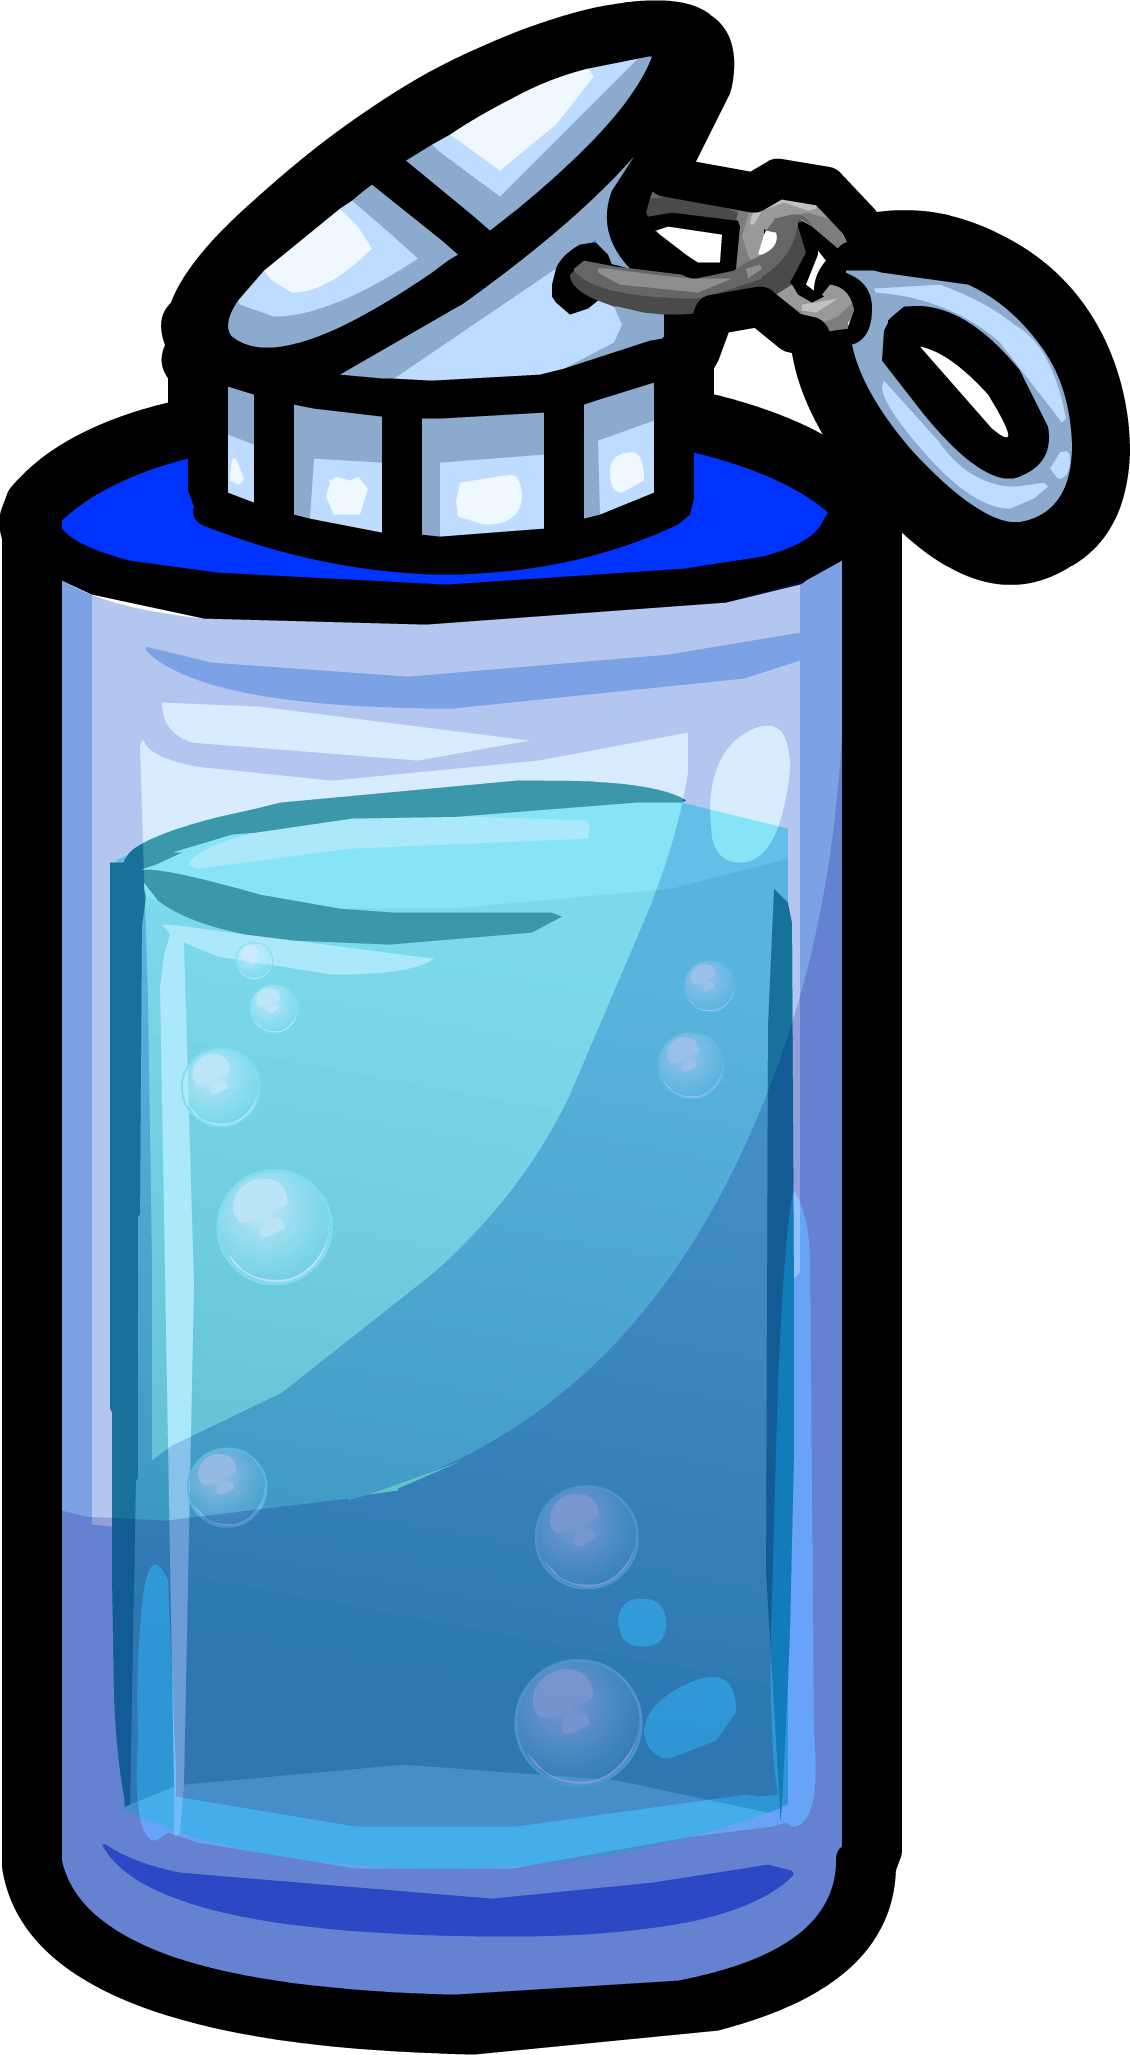 A Cartoon Of A Water Bottle